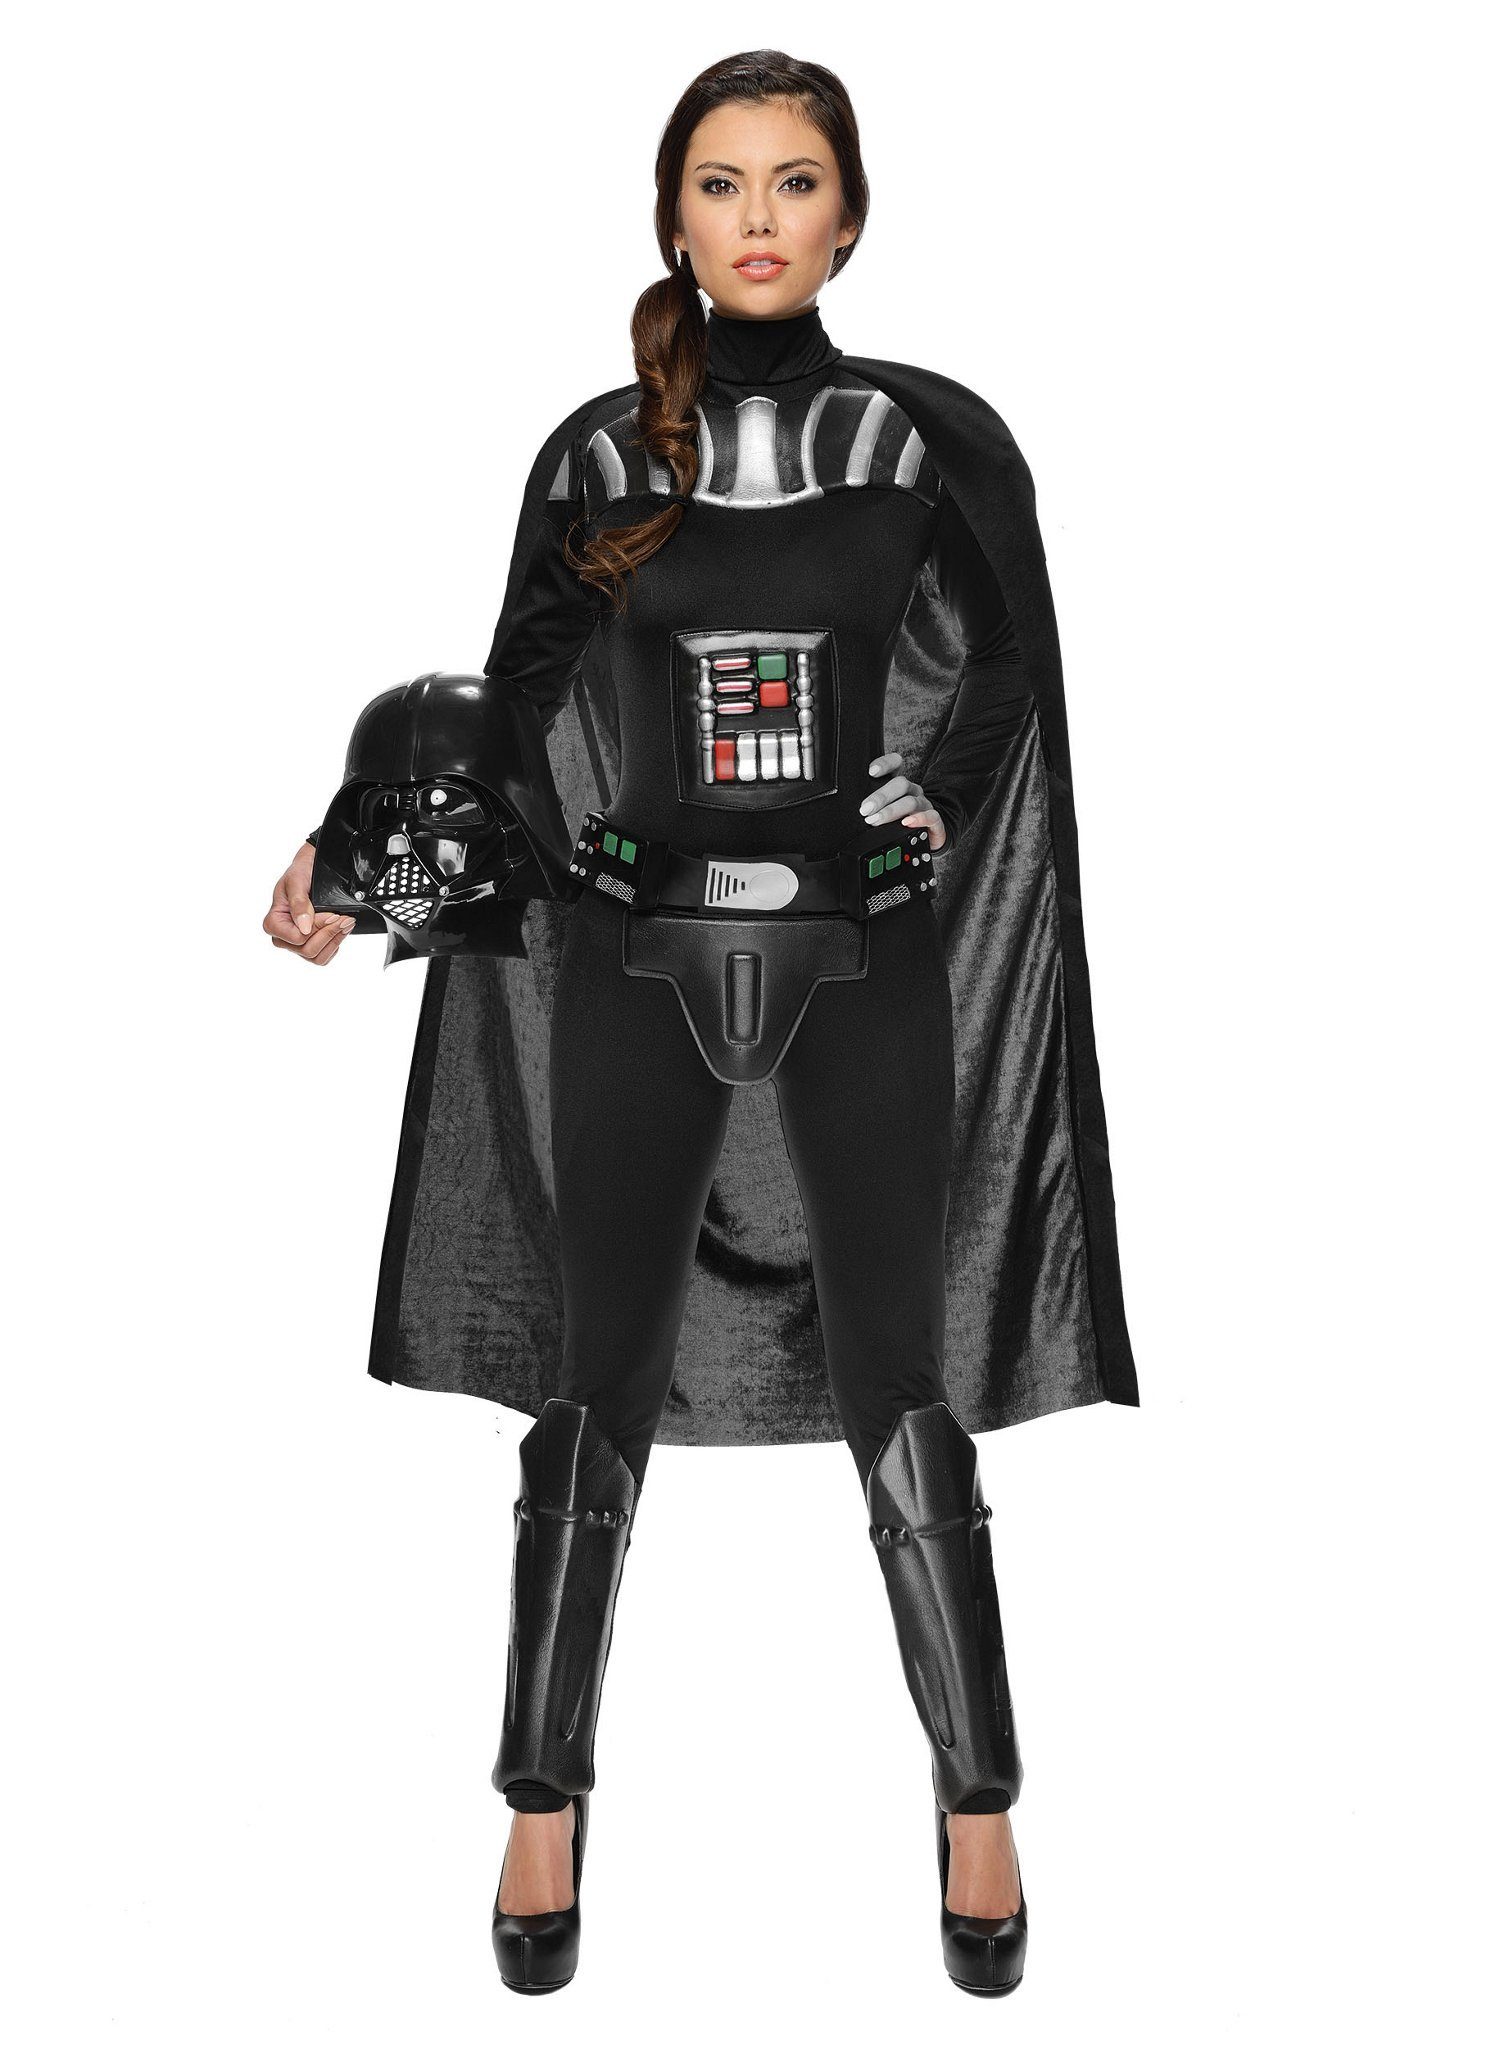 Rubie´s Kostüm Star Wars Miss Darth Vader, Original lizenzierte 'Star Wars' Verkleidung